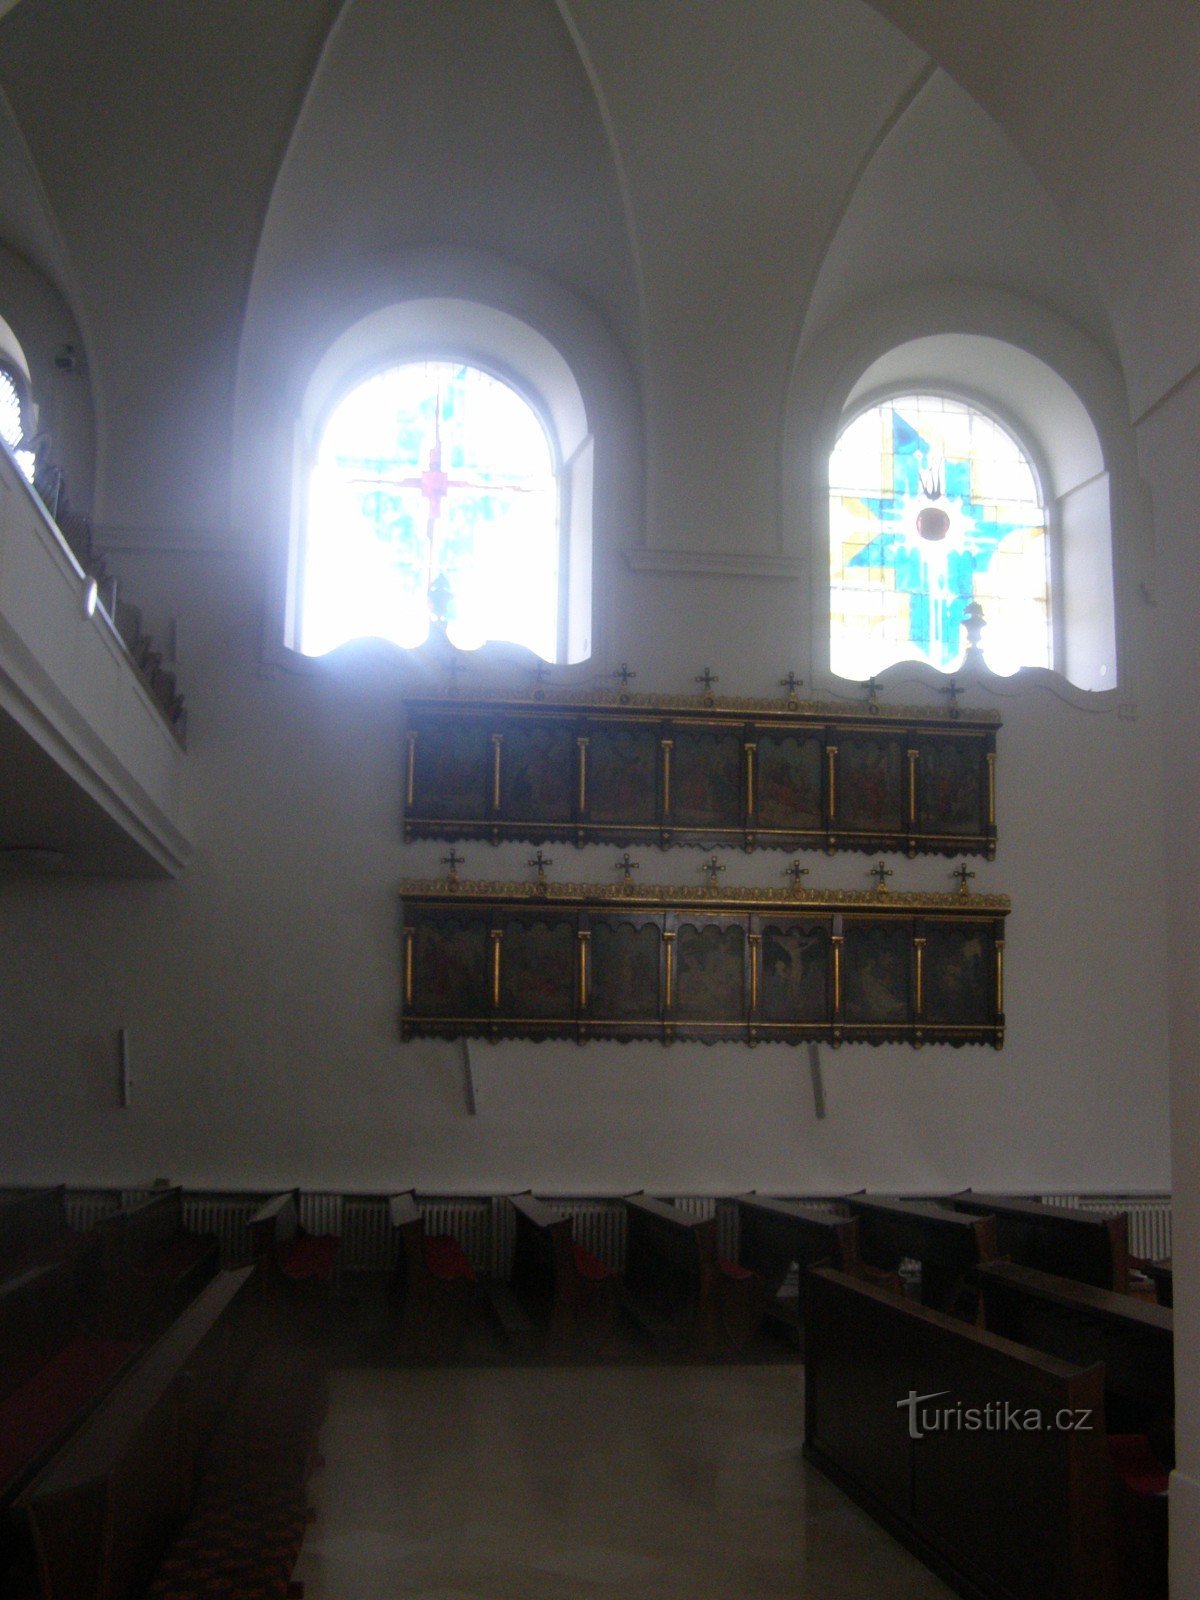 Gian giữa của nhà thờ